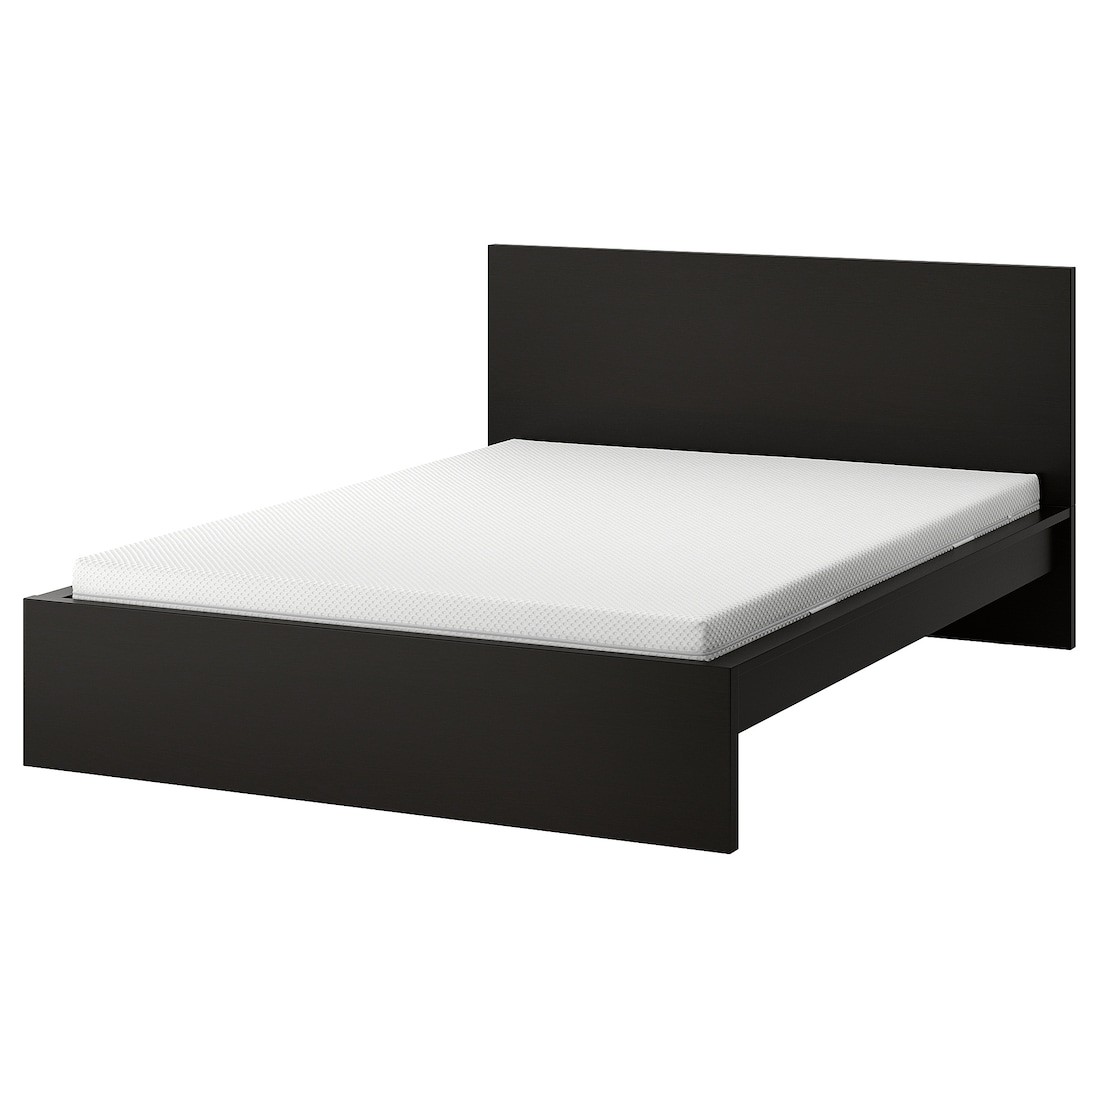 MALM Кровать с матрасом, черно-коричневый / Åbygda средней твердости, 140x200 см